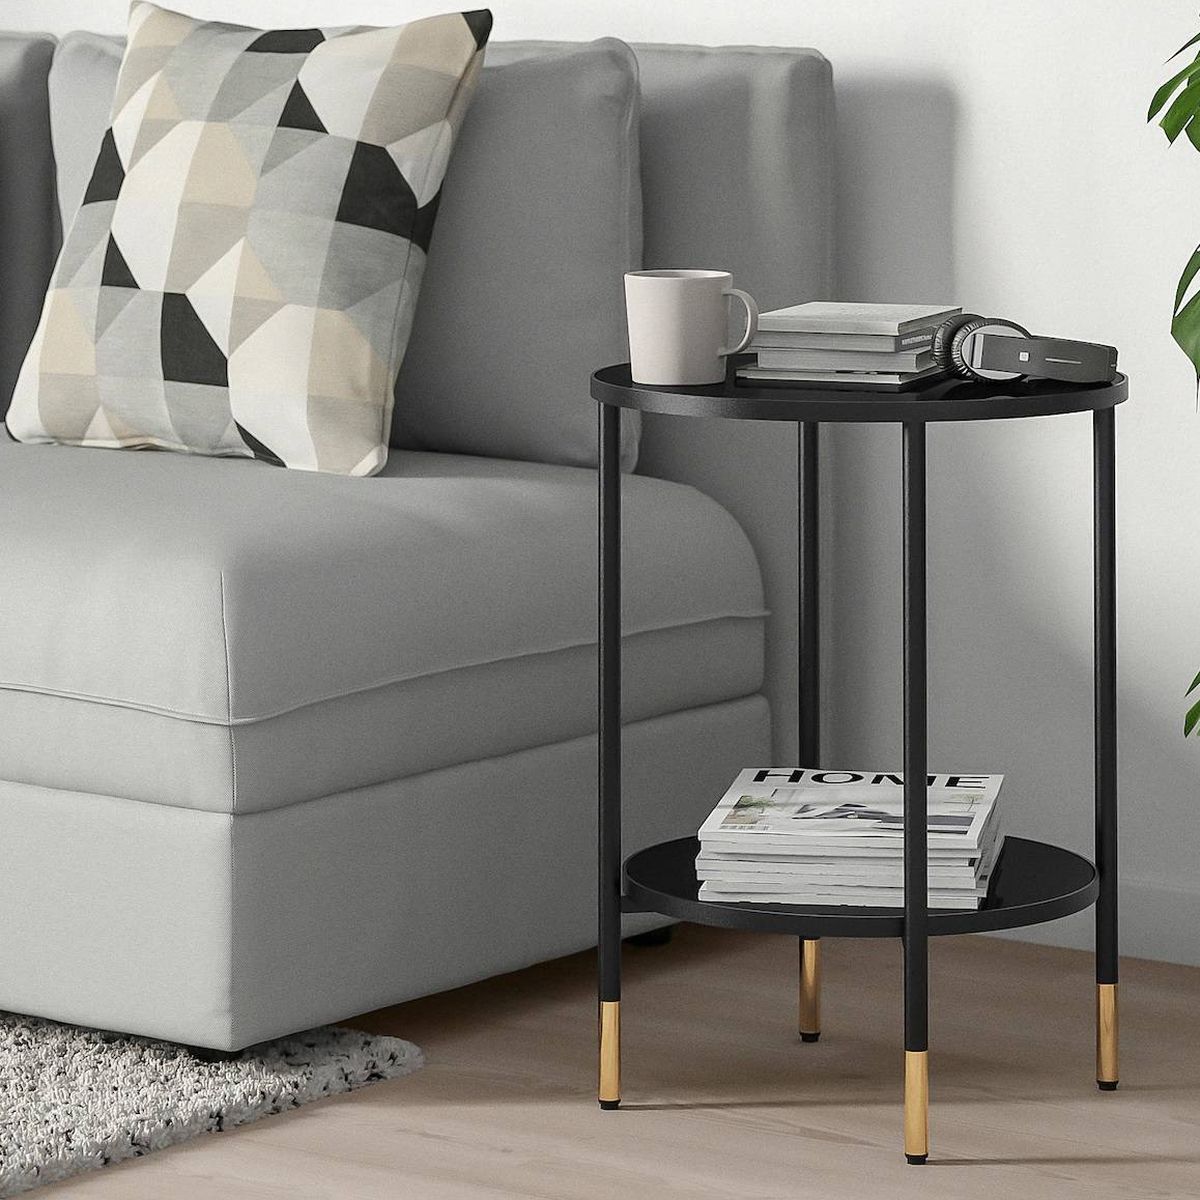 mesas auxiliares de Ikea harán de tu salón lugar más bonito